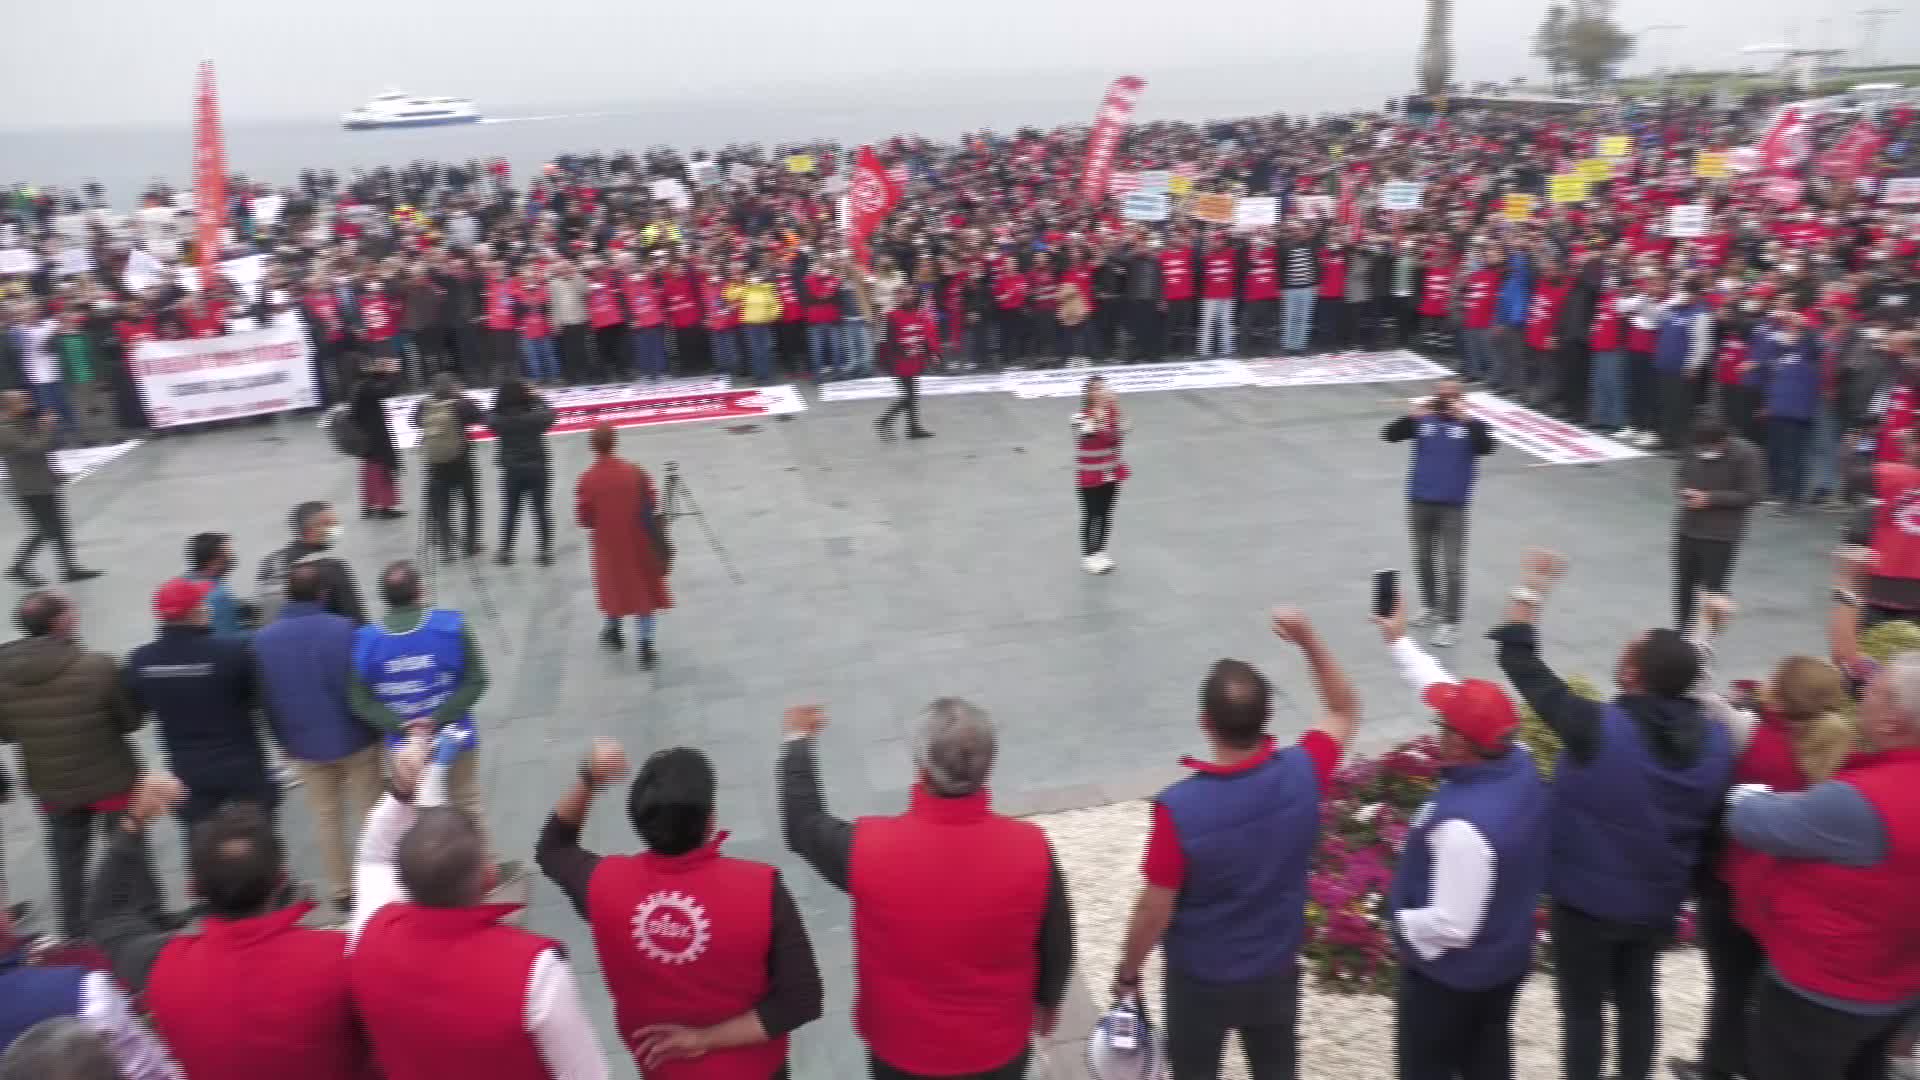 İşçiler İzmir Cumhuriyet Meydanı'ndan seslendi: "Geçinemiyoruz!"